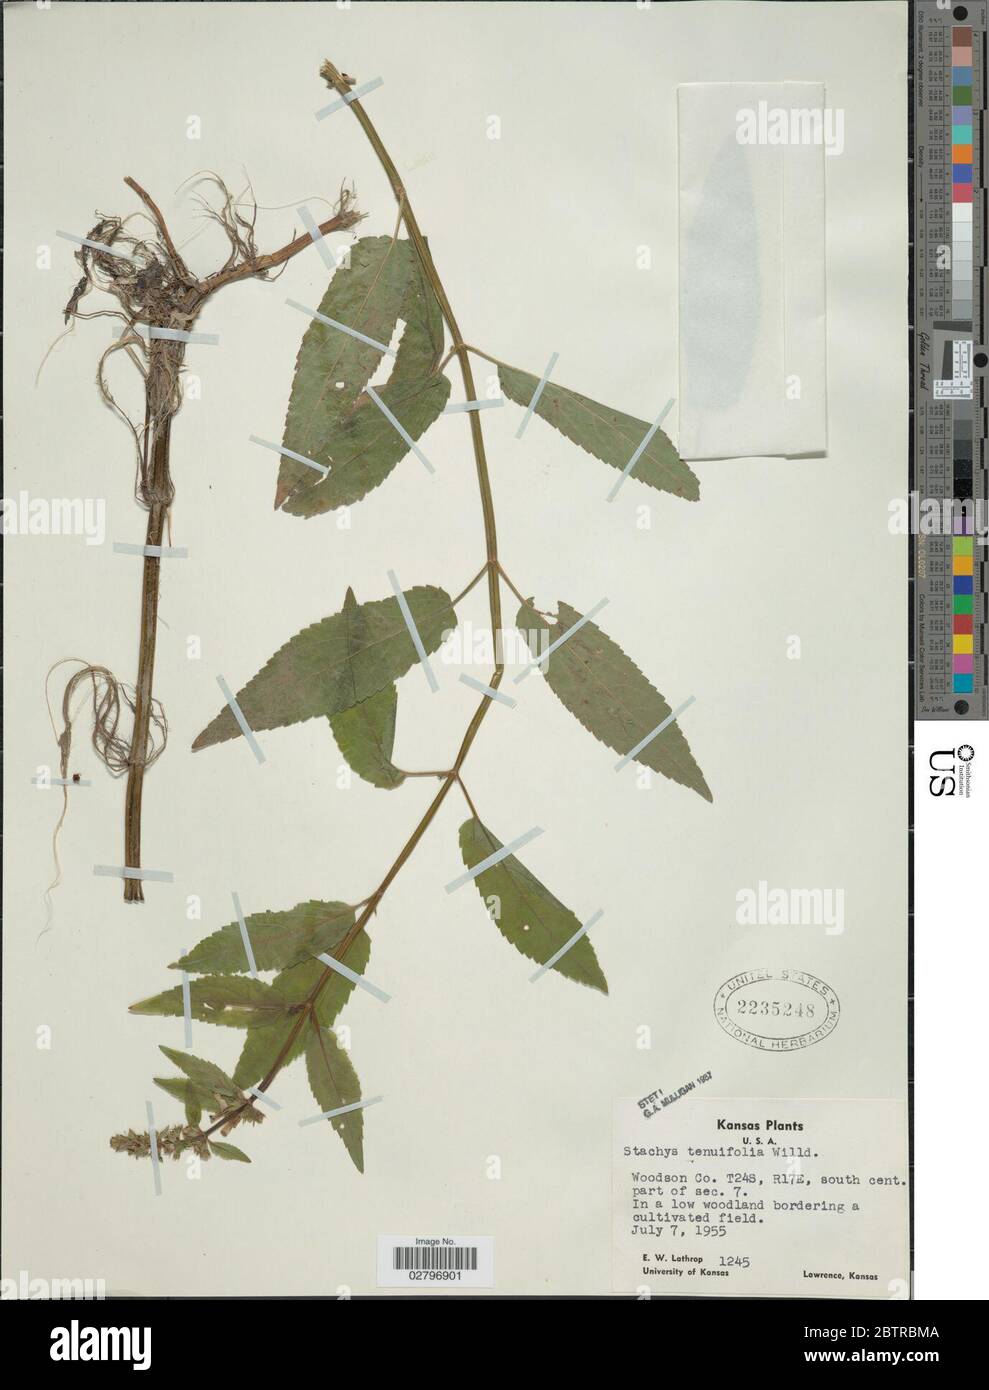 Stachys tenuifolia Willd. Stock Photo